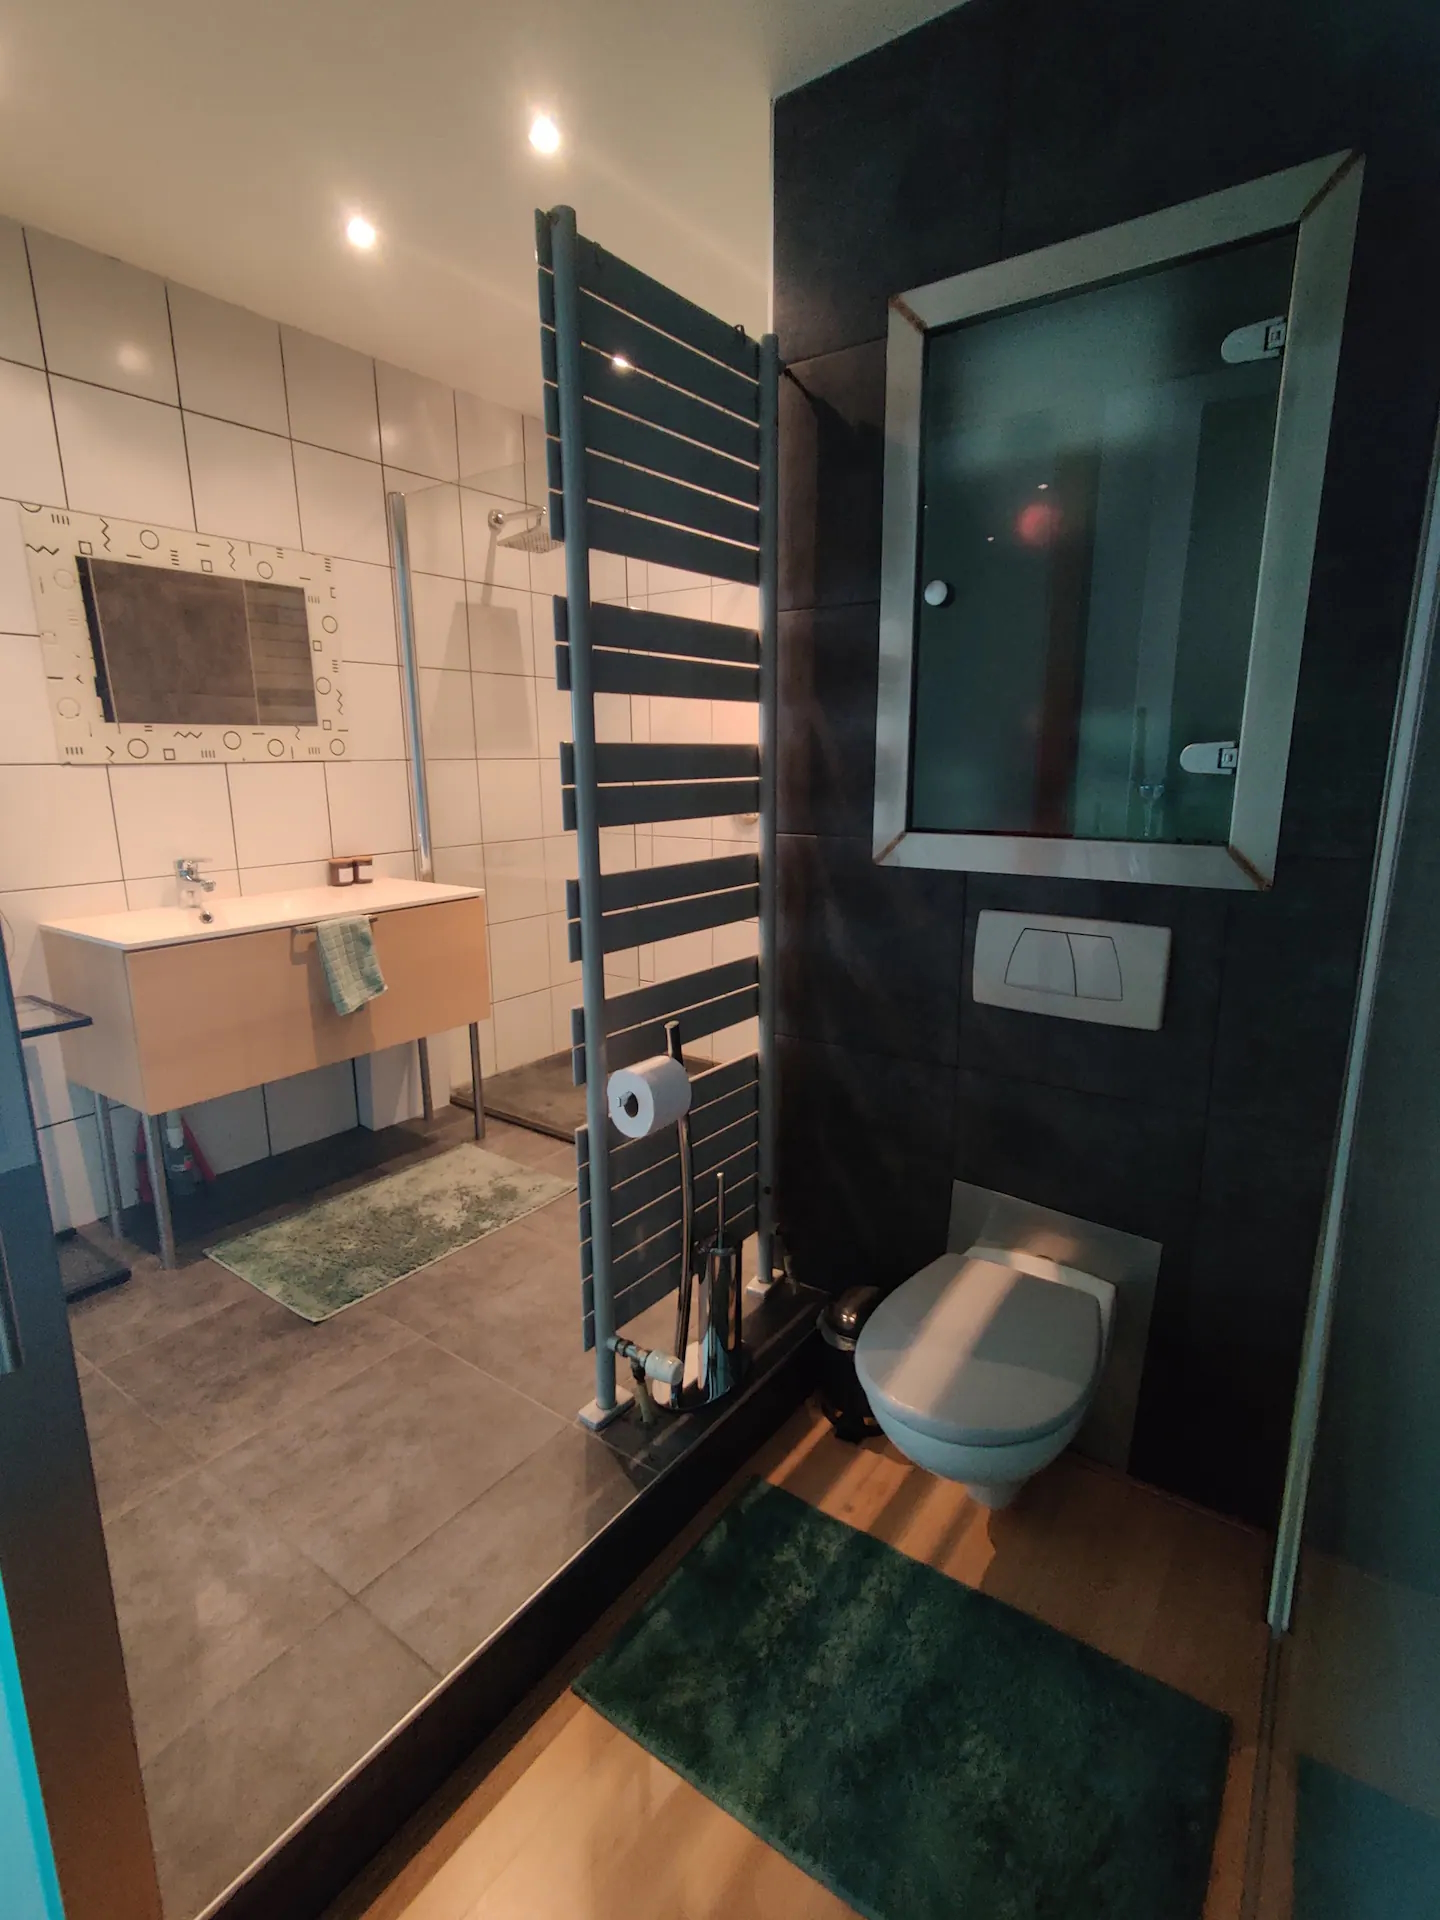 Apartment for rent in antwerp - bathroom